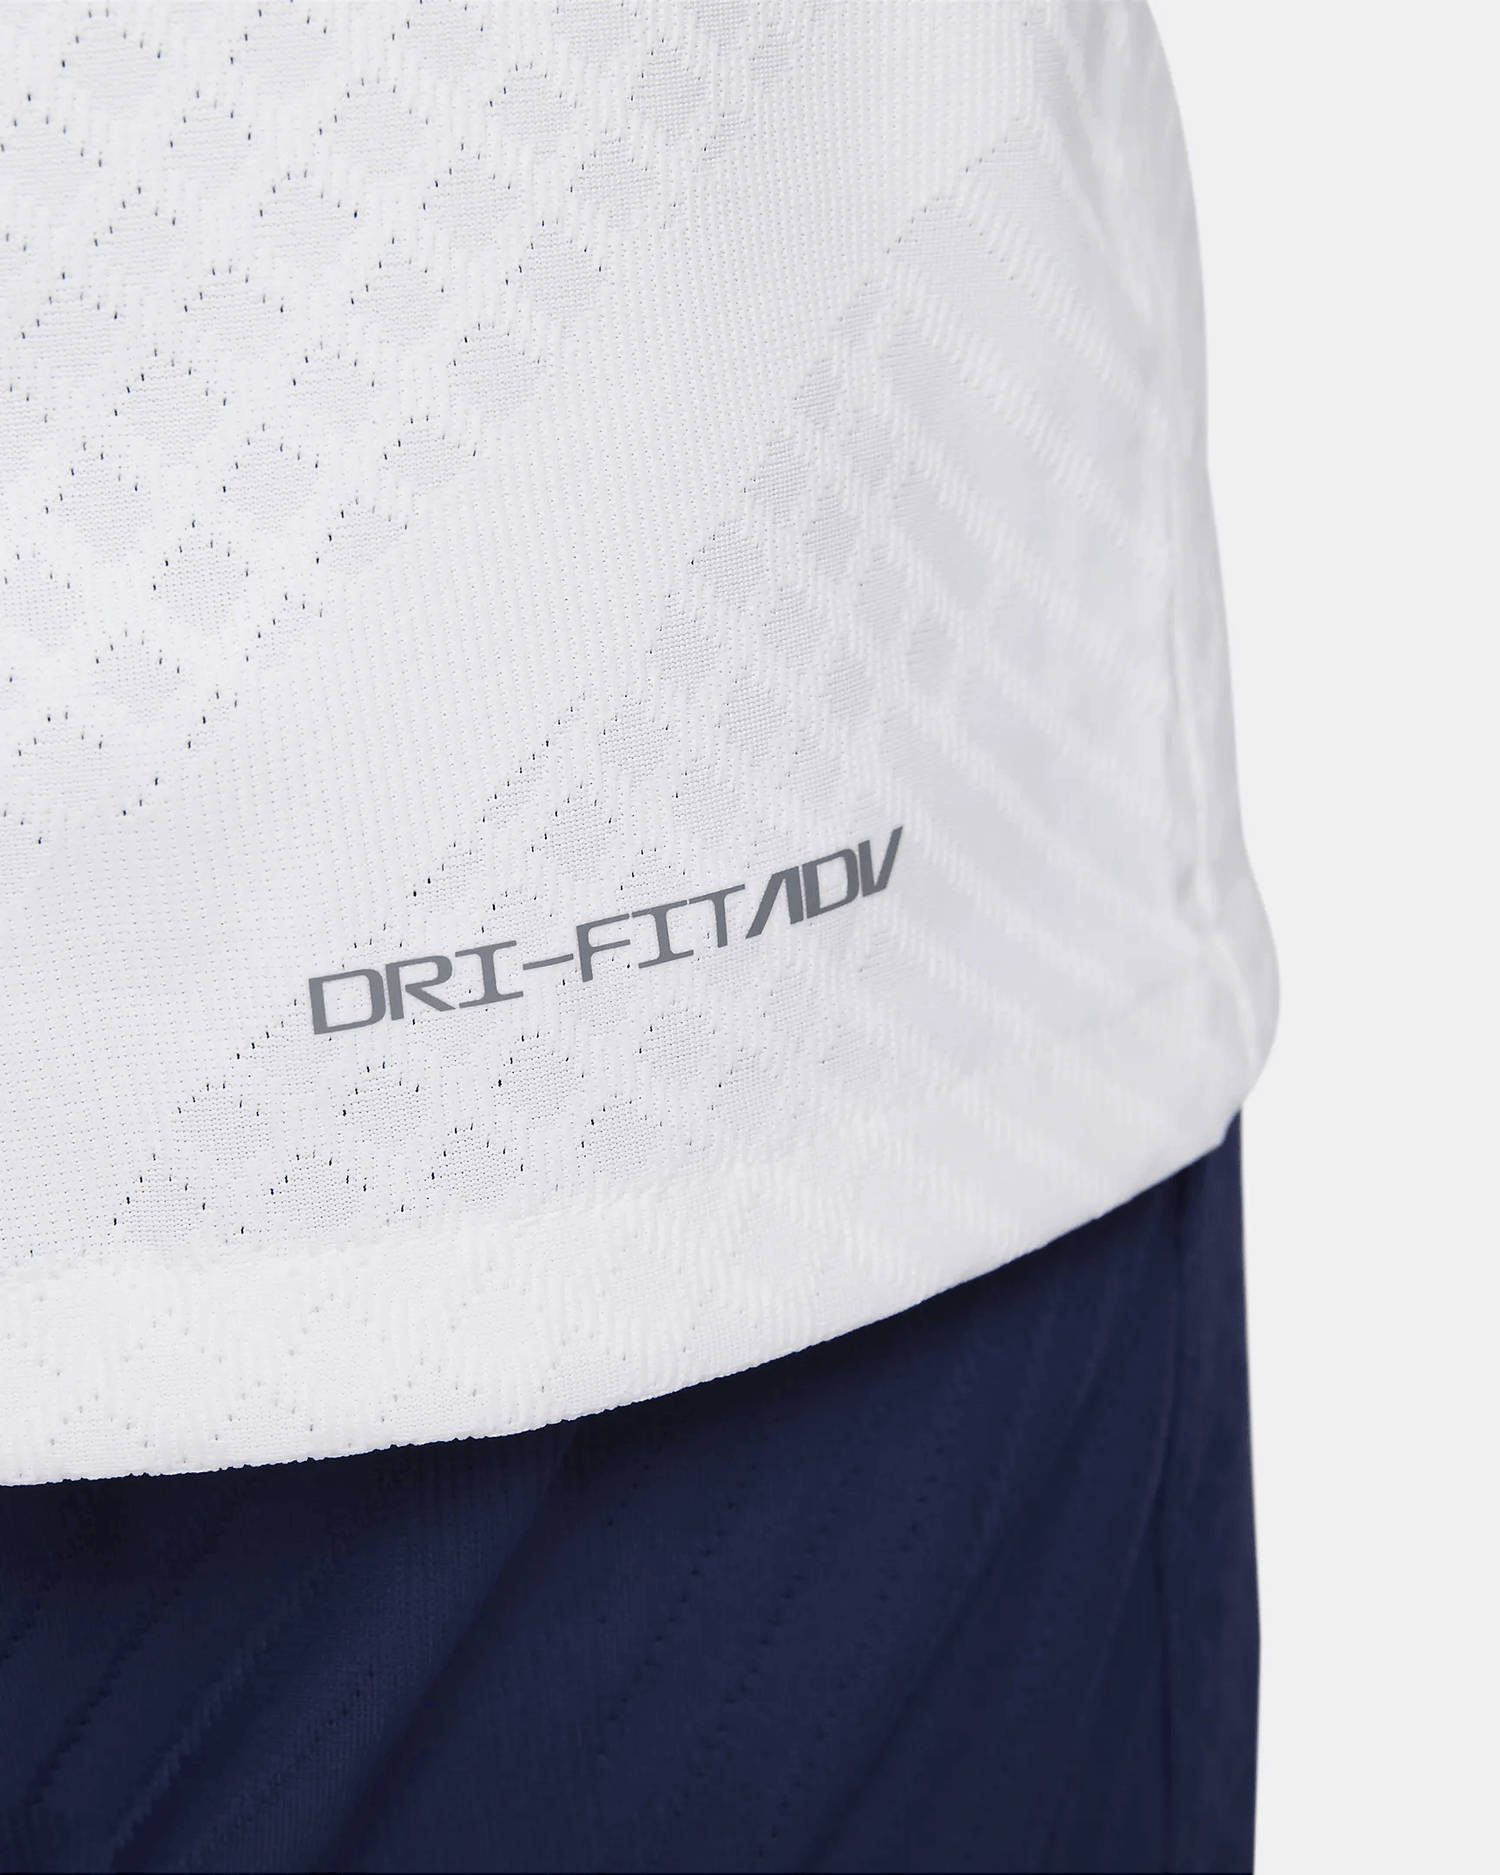 Tottenham Hotspur Spurs Jersey Shirt 100% Original Size S 2022